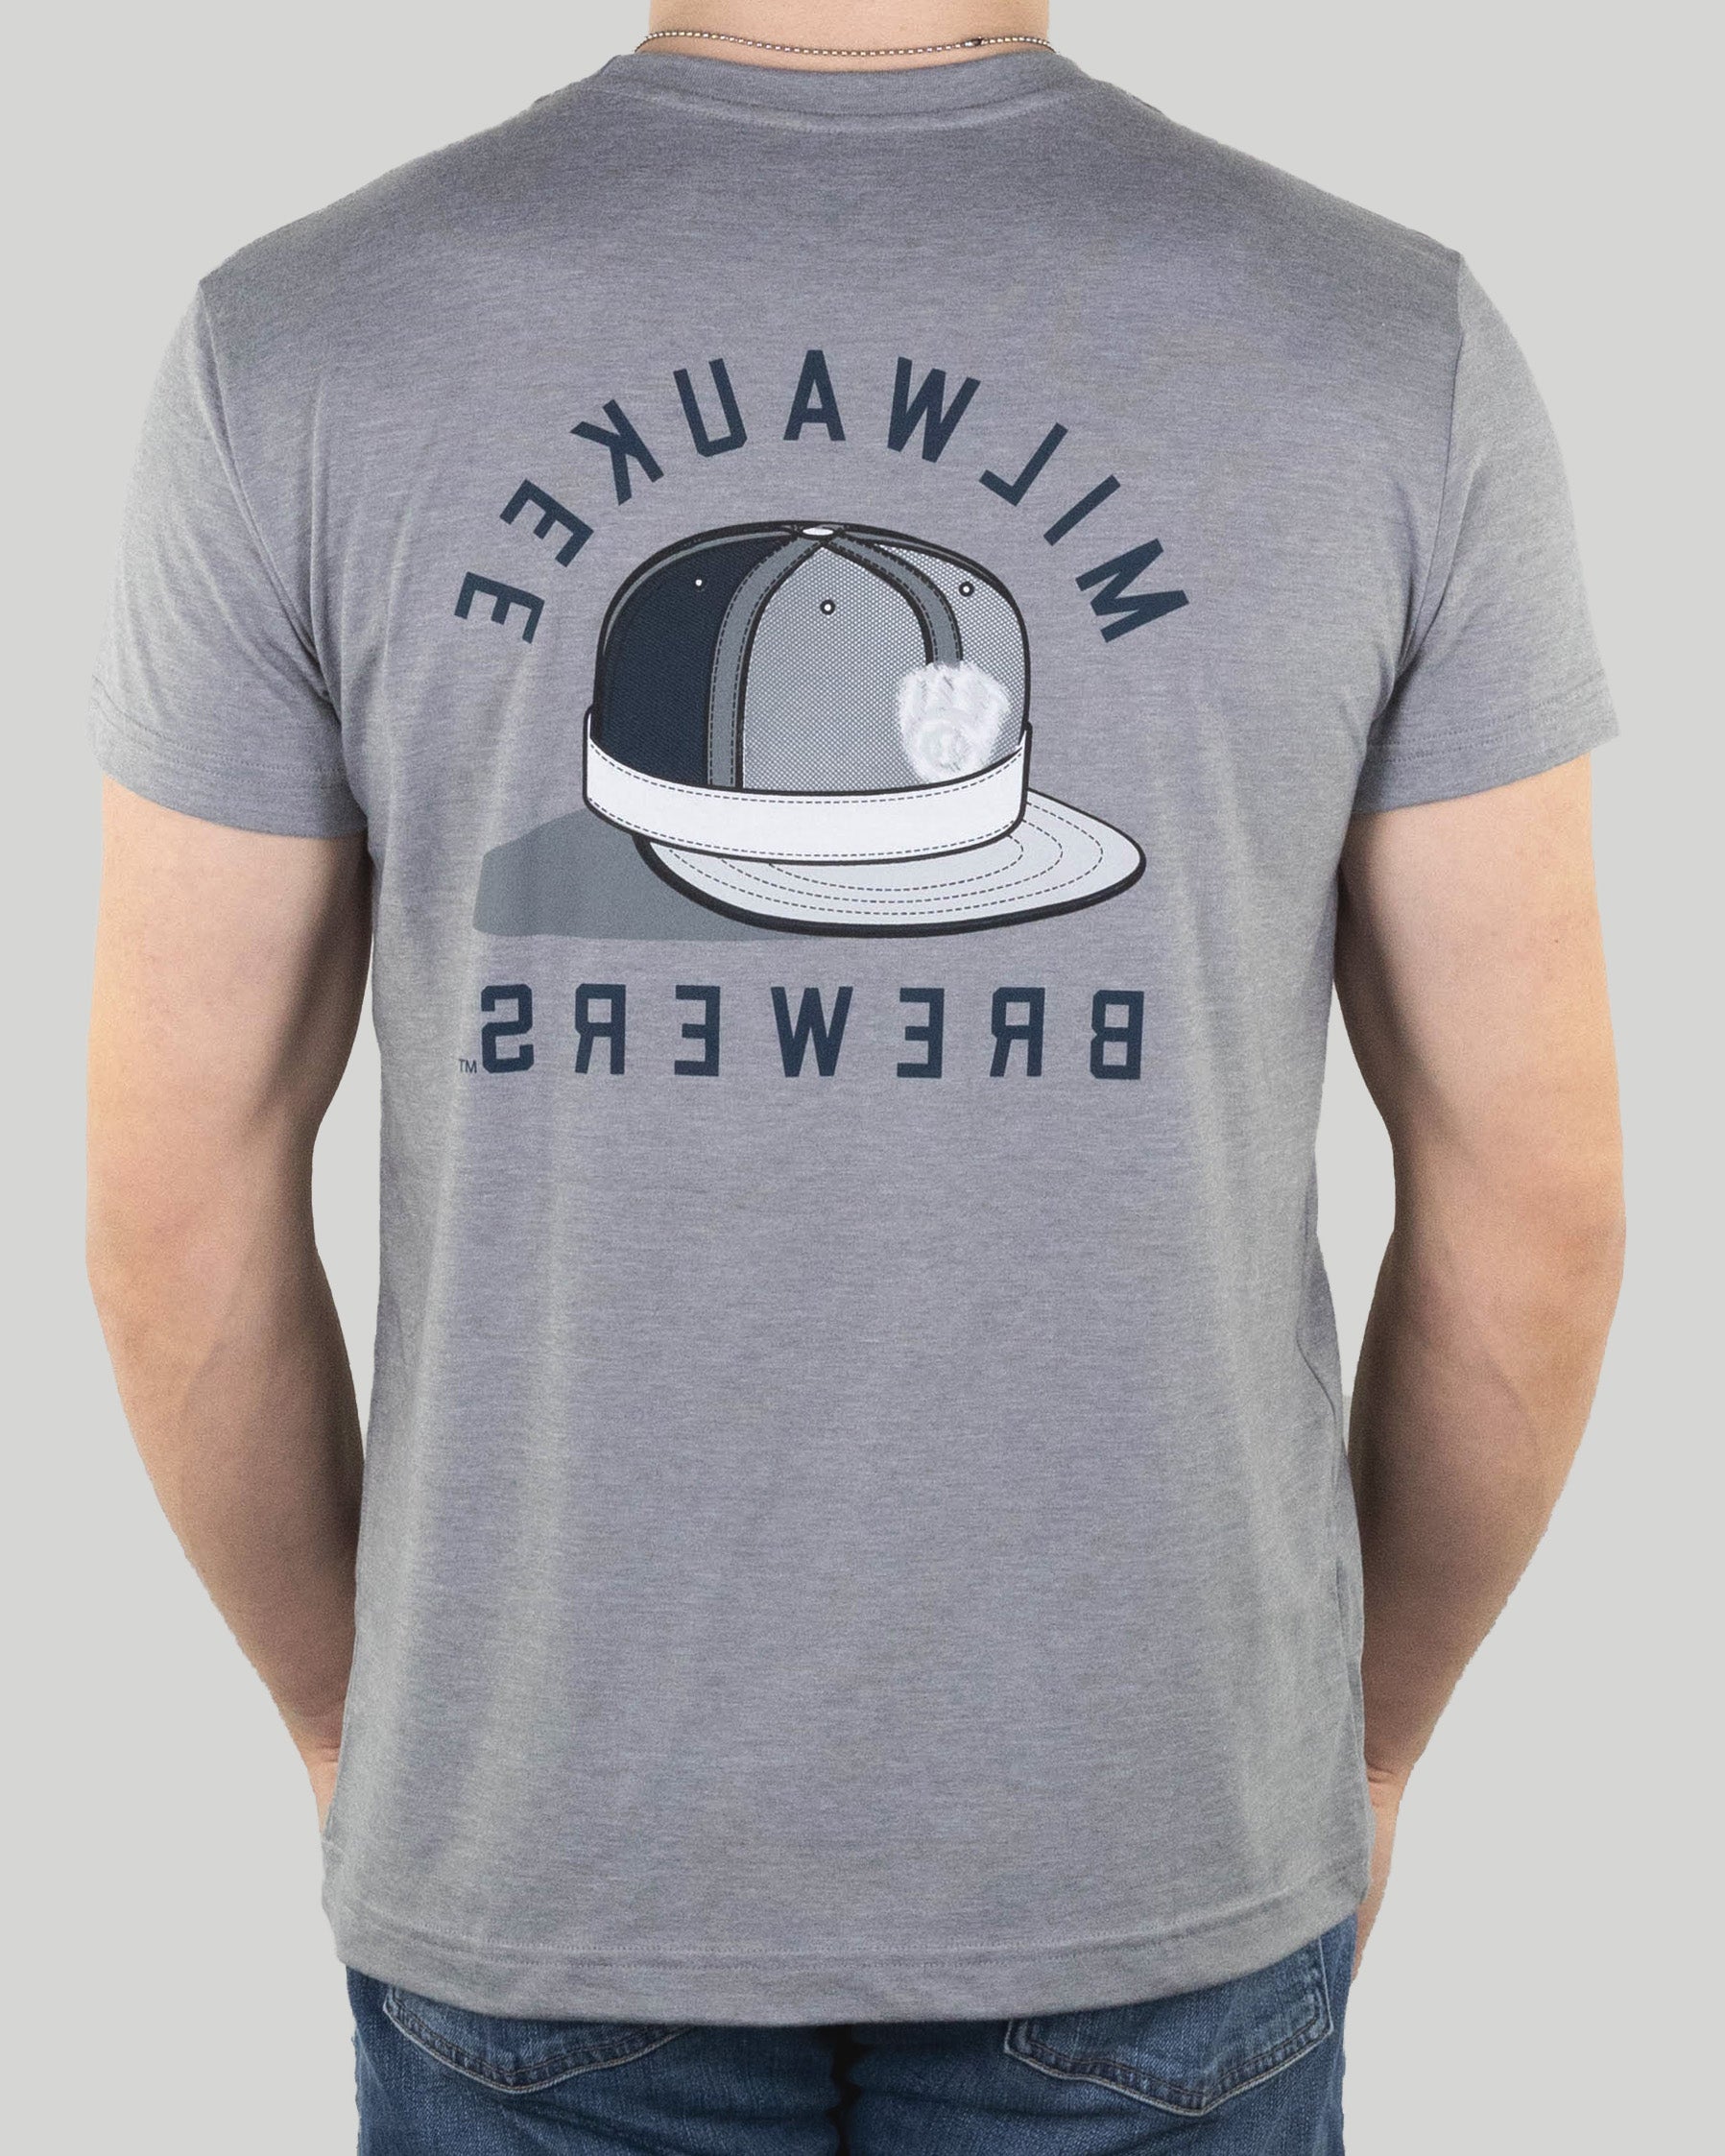 Brewers Work Shirt